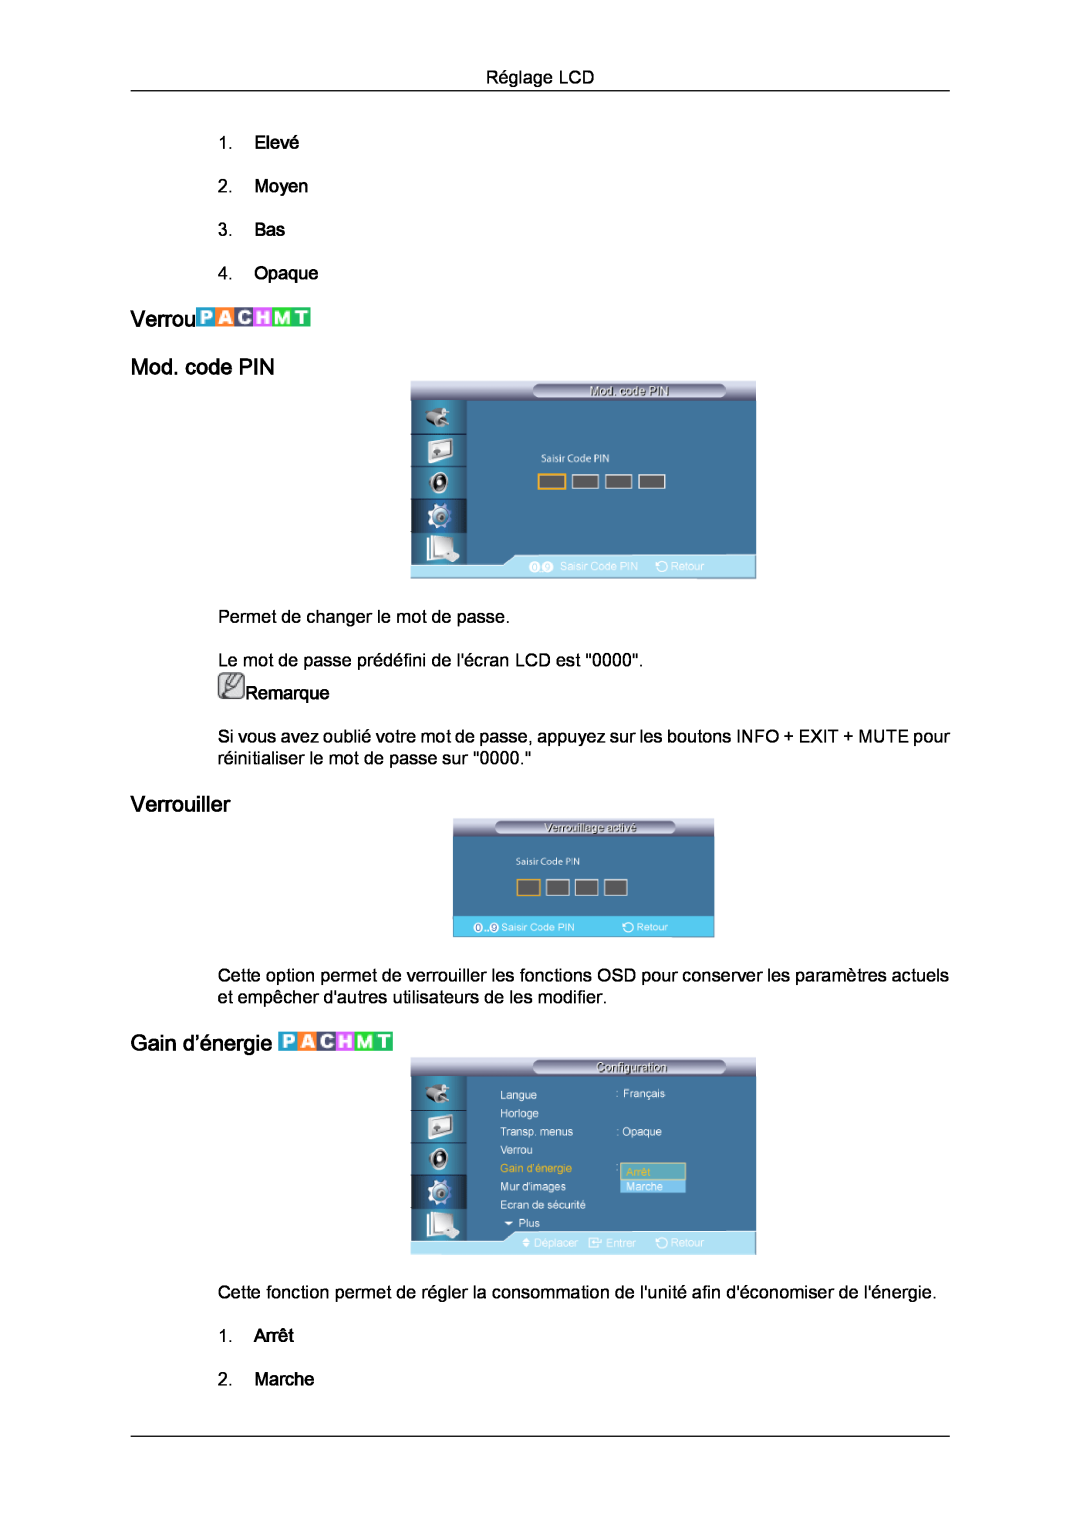 Samsung LH46CRPMBC/EN manual Verrou Mod. code PIN, Verrouiller, Gain d’énergie, Elevé 2. Moyen 3. Bas 4. Opaque, Remarque 